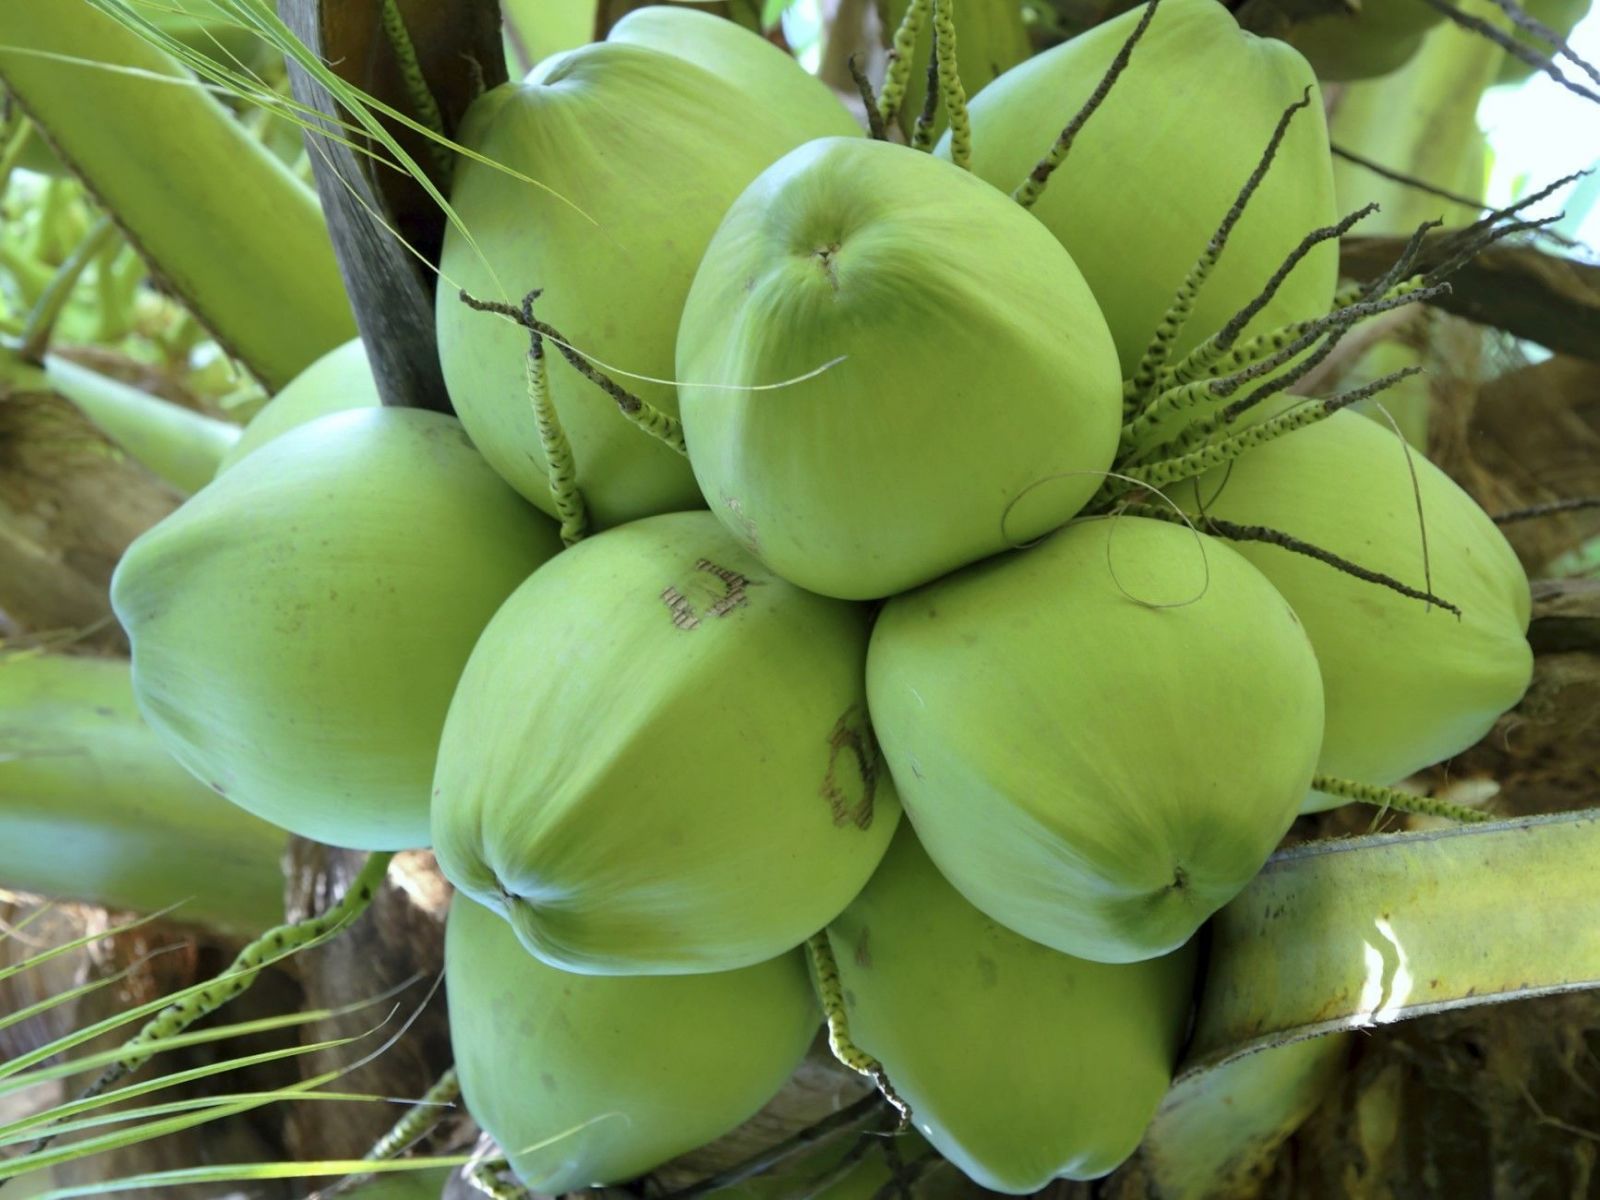 Visiter les commerces traditionnels de noix de coco